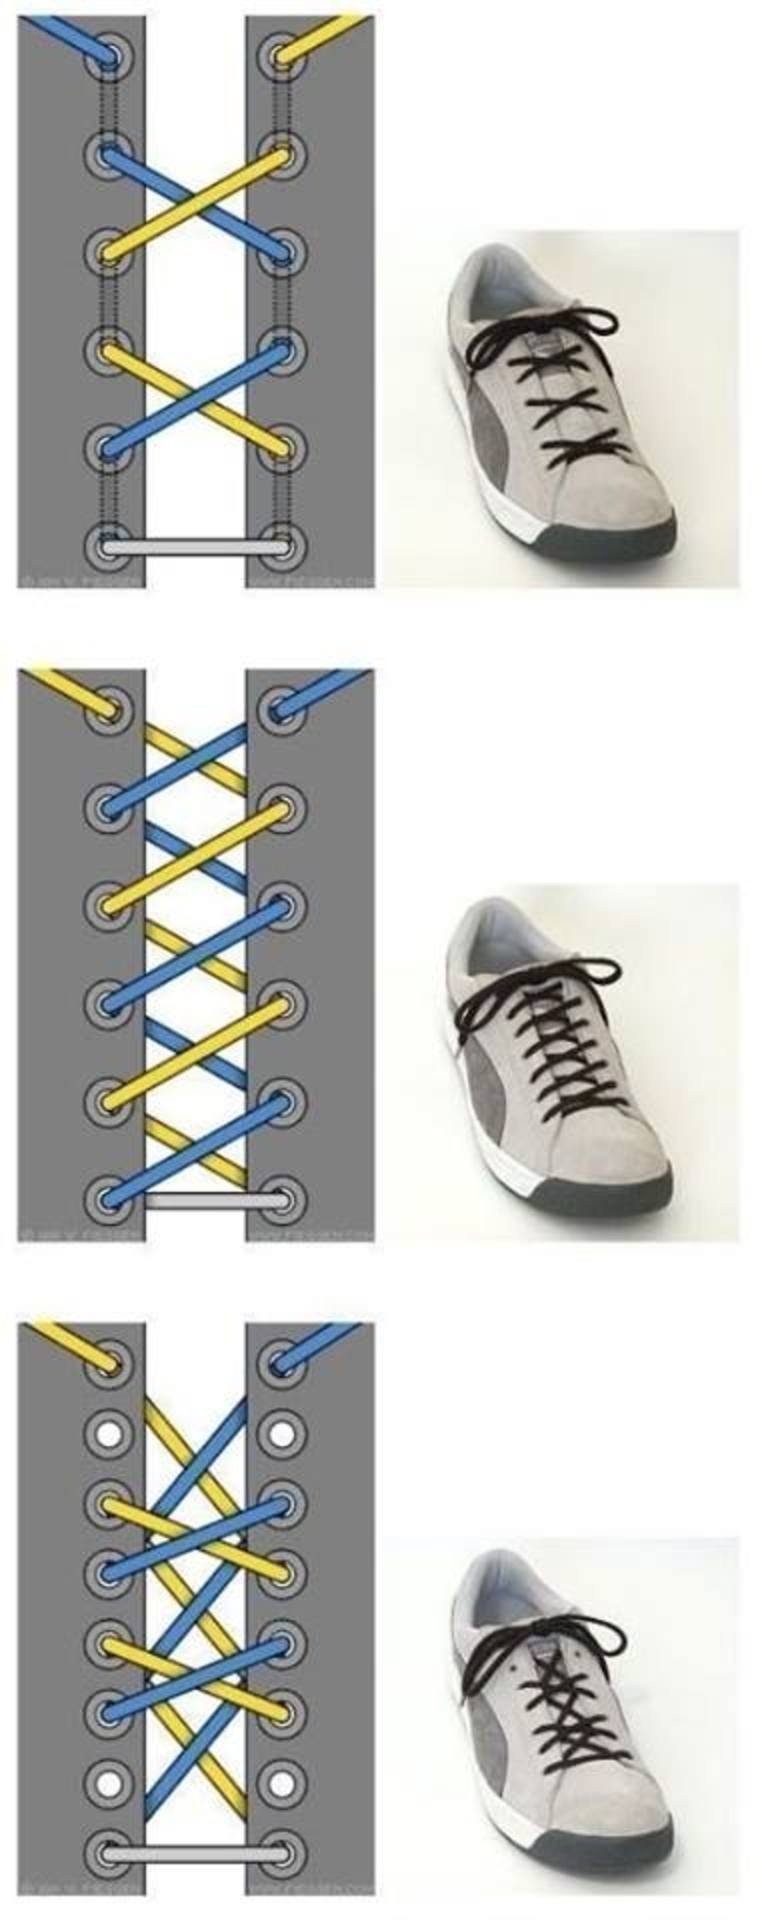 Шнуровка кроссовок варианты с 6. Типы шнурования шнурков на 5. Типы шнурования шнурков на 5 дырок. Типы шнурования шнурков на 6 отверстий. Схема завязывания шнурков на кроссовках.